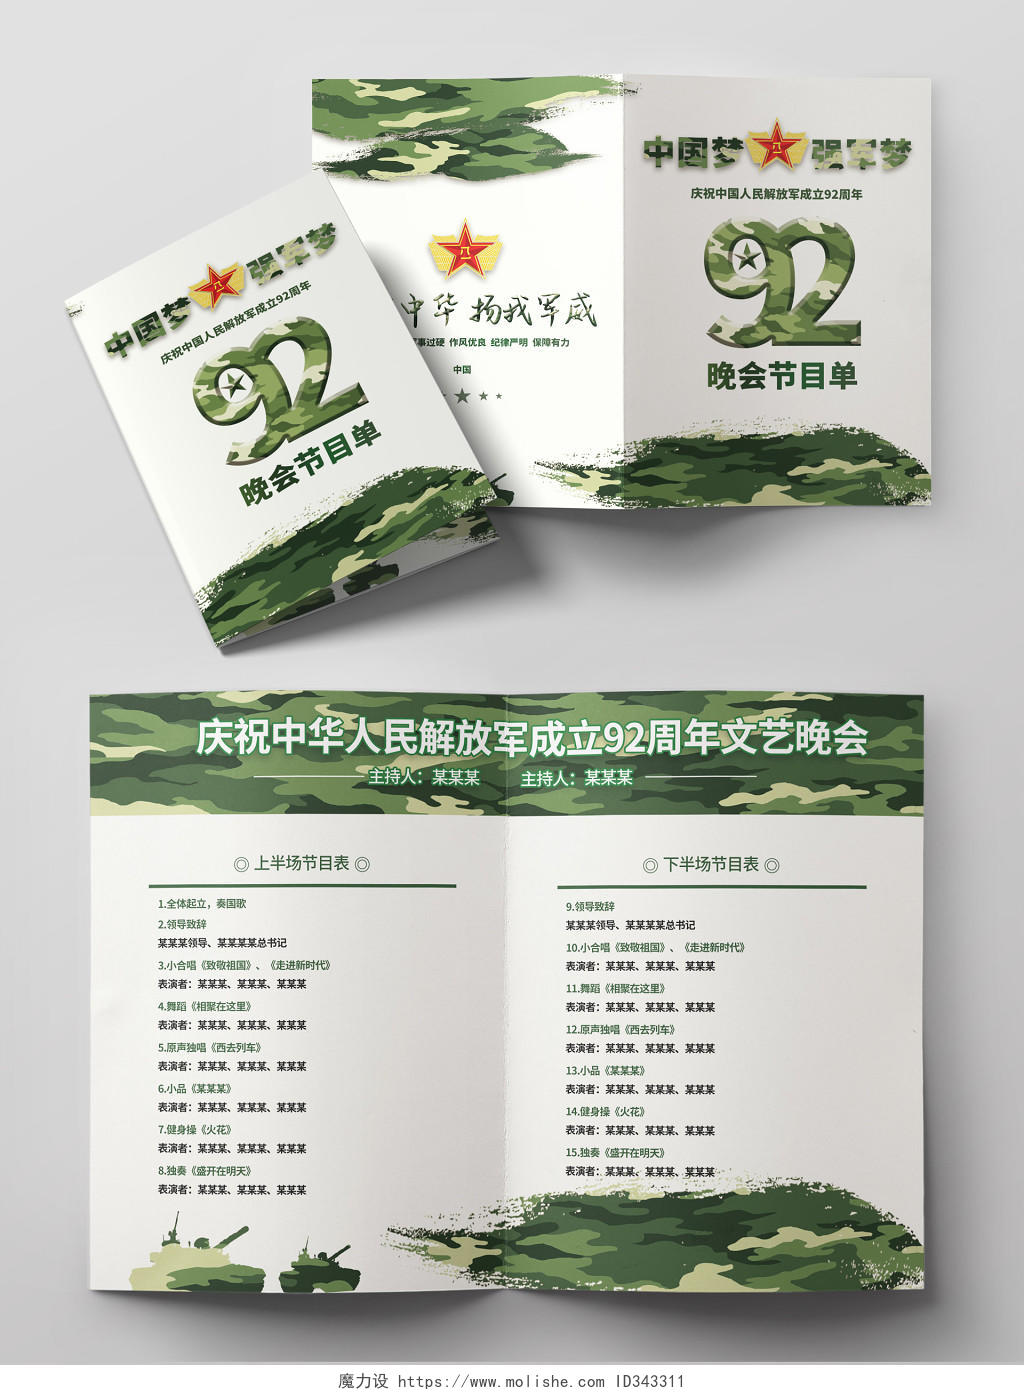 迷彩背景建军节中国梦强军梦解放军成立92周年晚会节目单